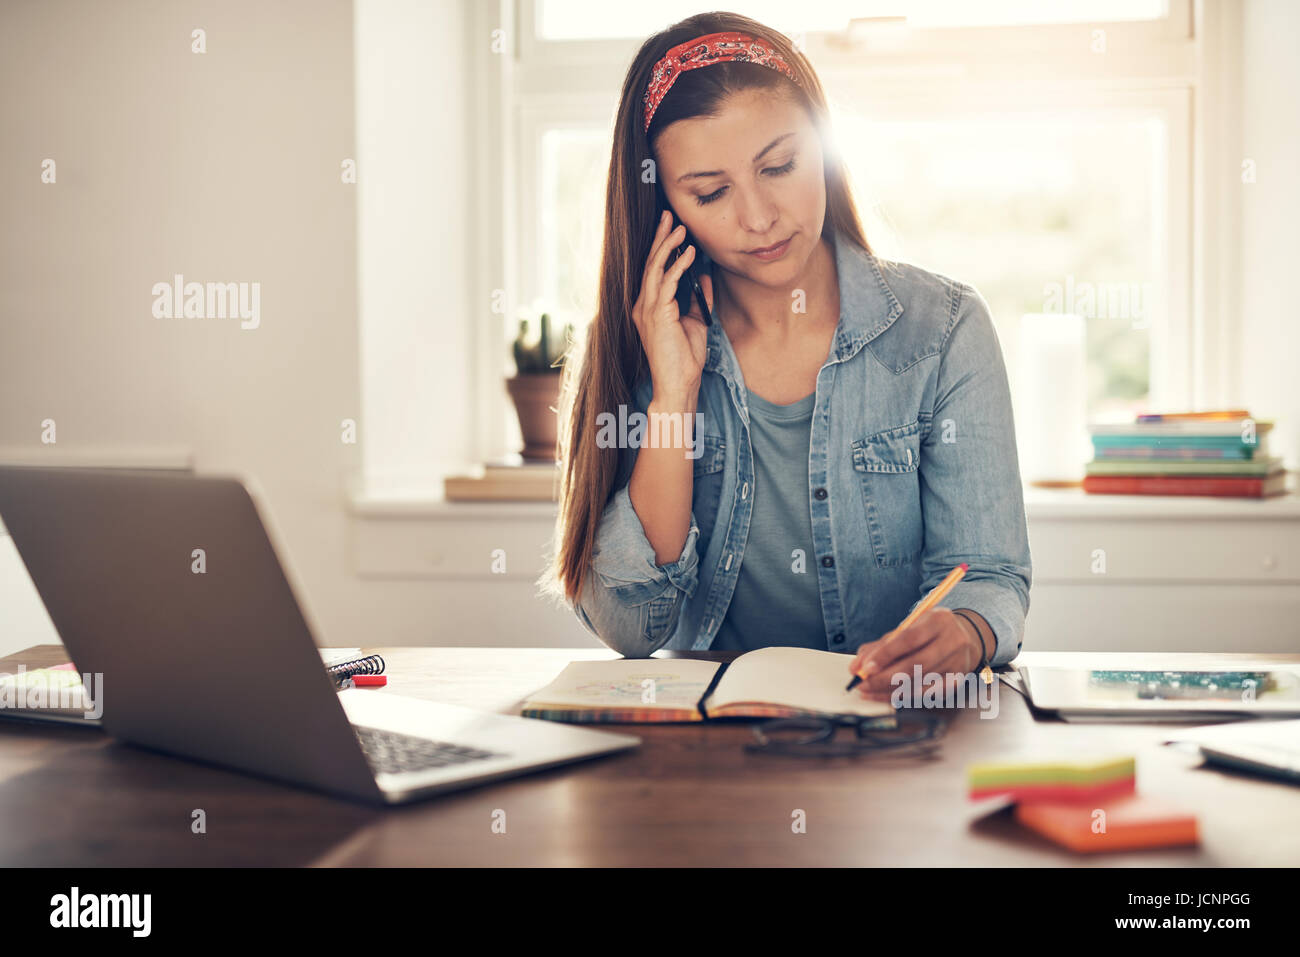 Jeune entrepreneur femme parlant smartphone et écrit dans le bloc-notes sitting at laptop in office. Banque D'Images